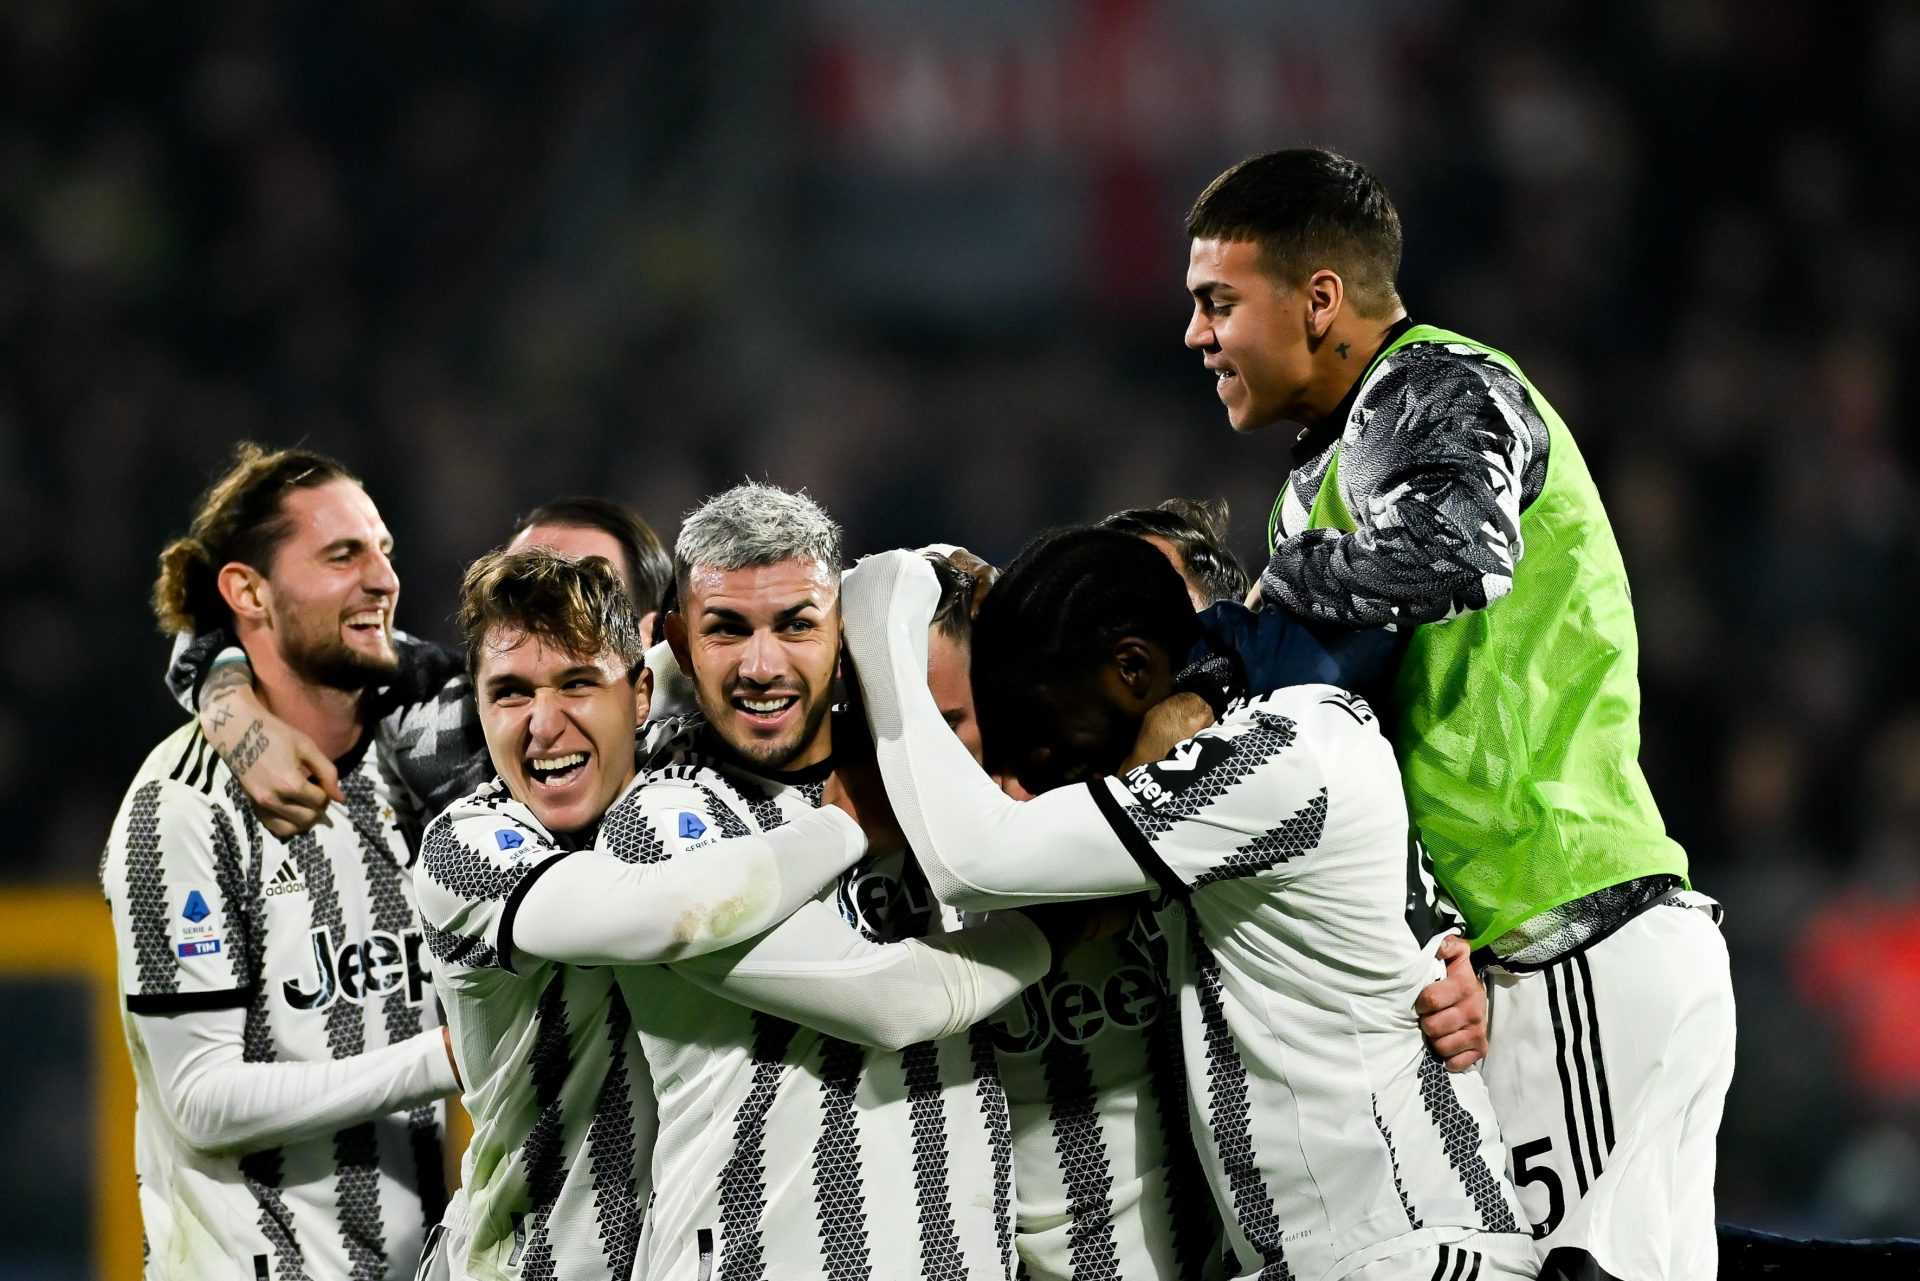 Conferenza stampa Juventus-Atalanta, Allegri: “12 punti dal quarto posto. Dobbiamo vincere"